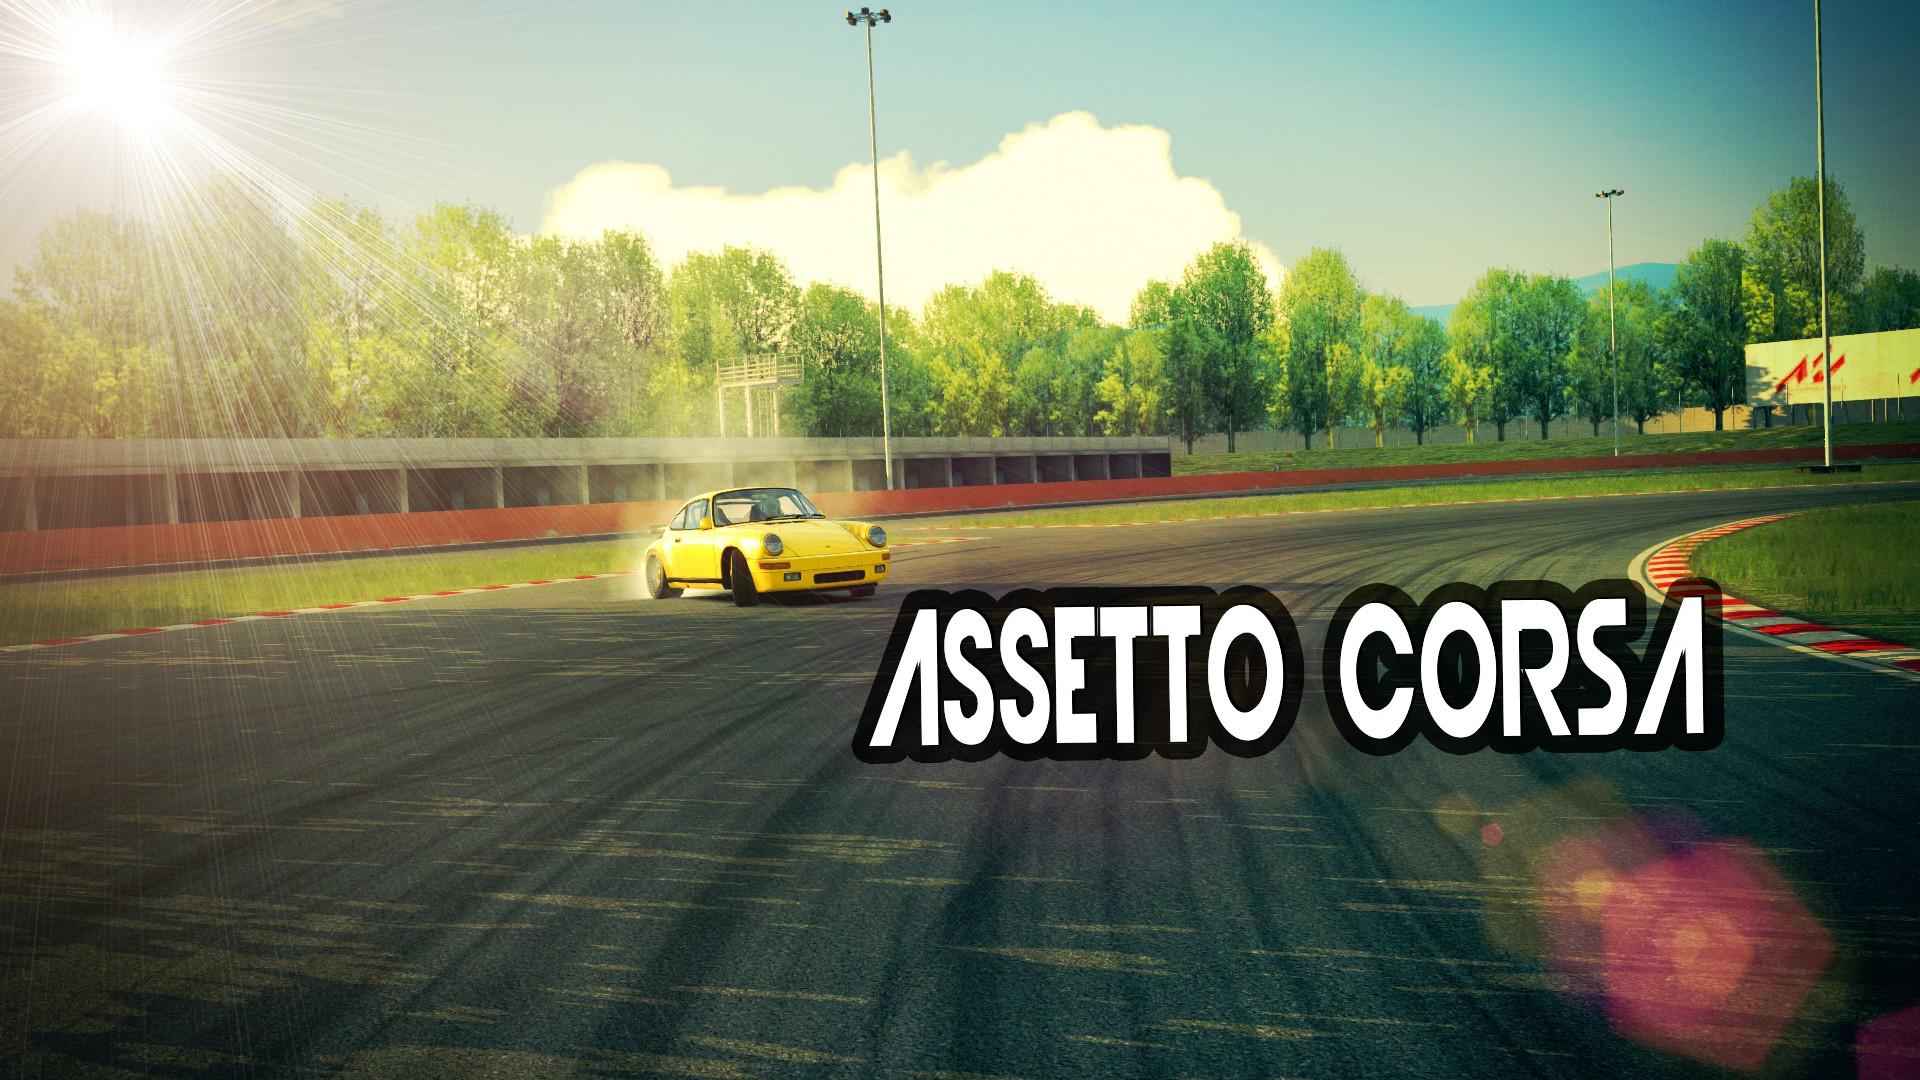 Assetto Corsa, Video Games, Ruf CTR, RUF Wallpaper